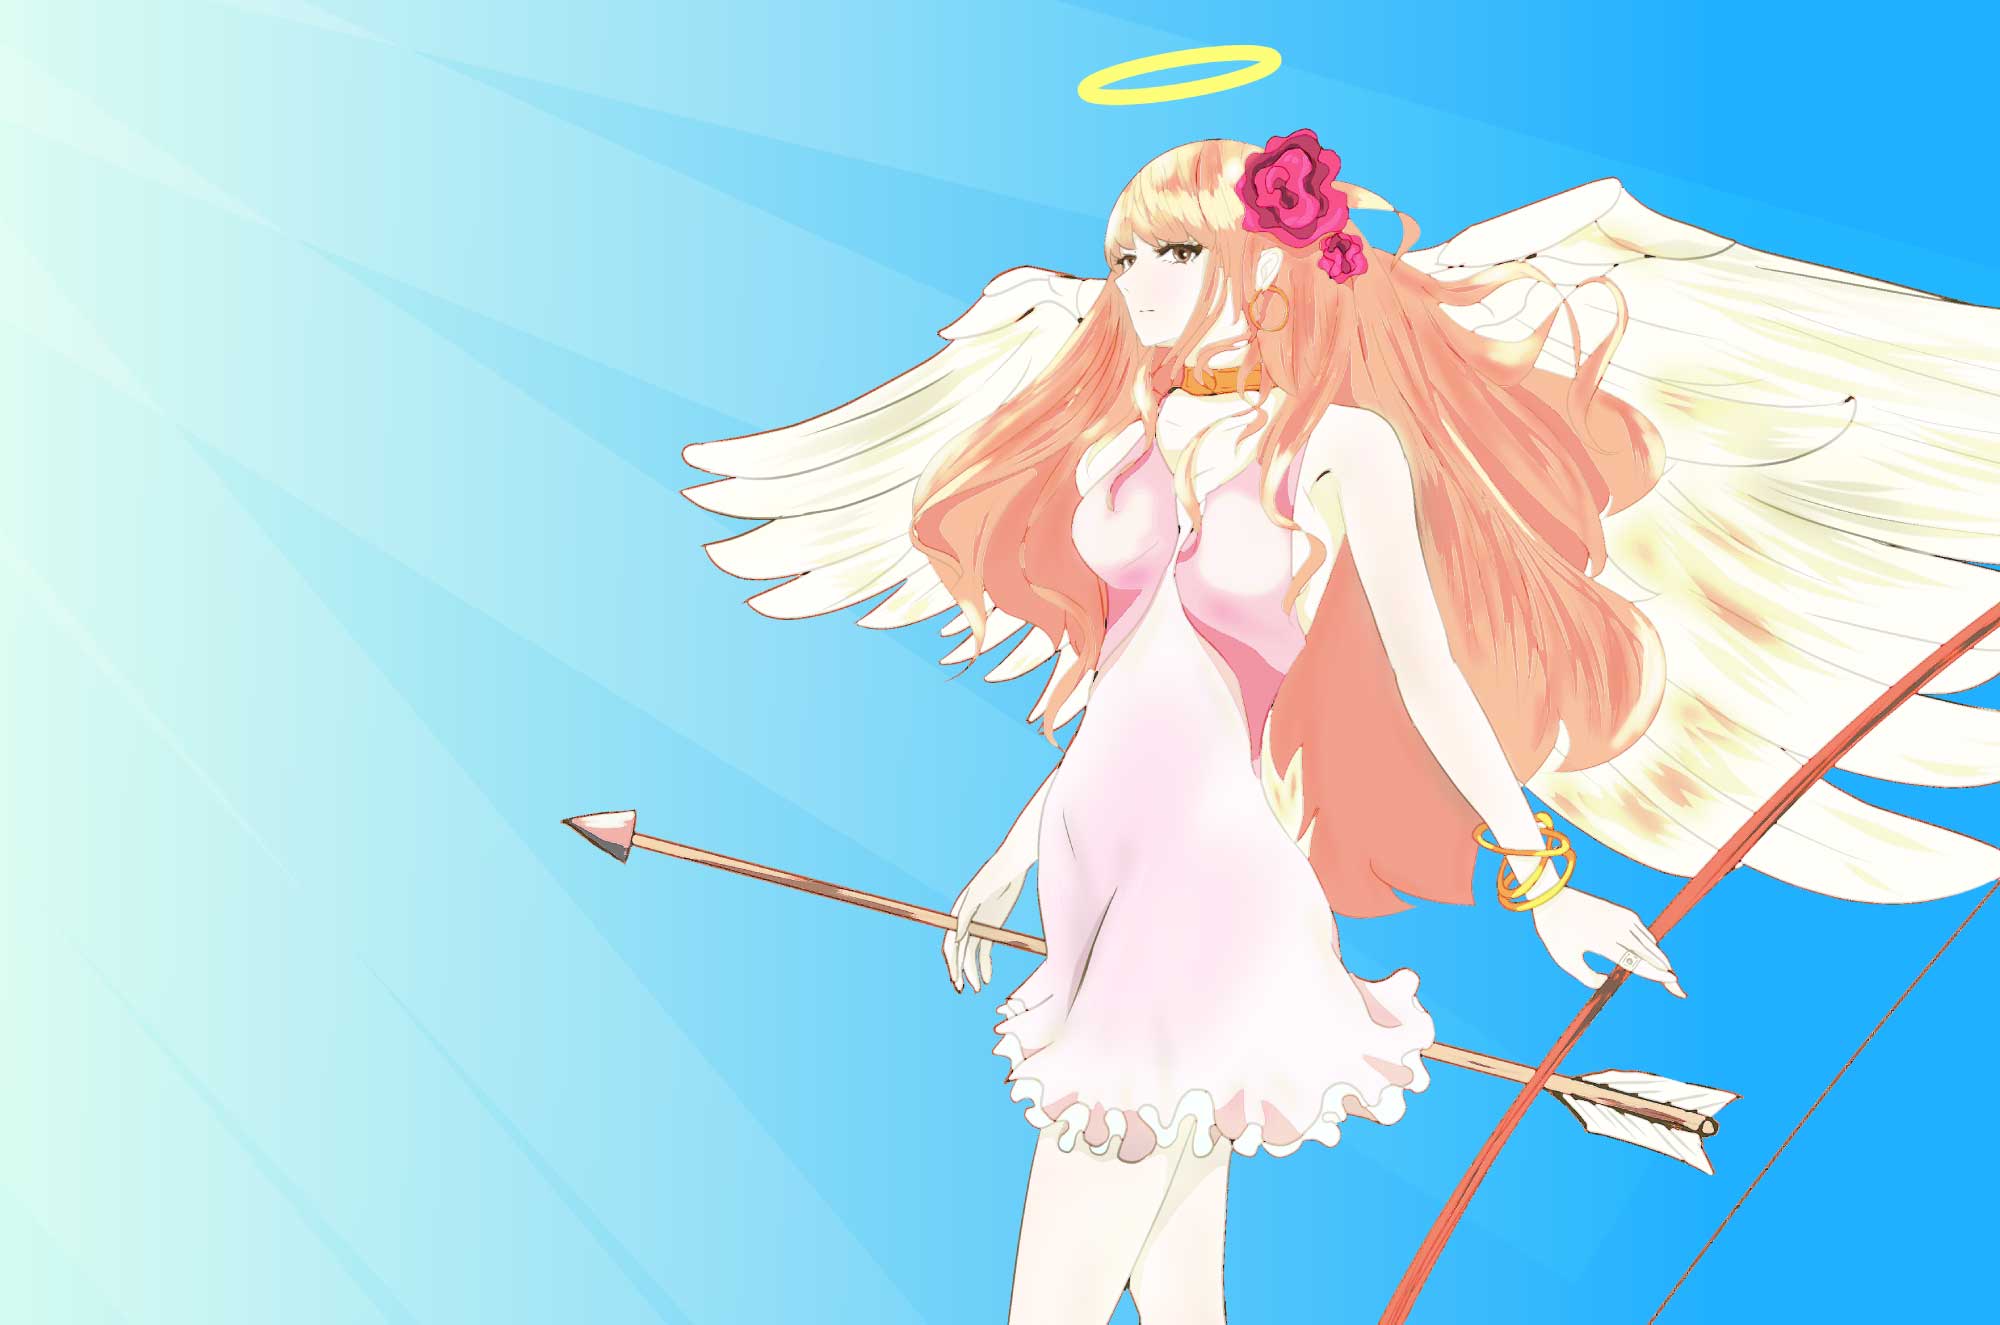 天使のイラスト 可愛い想像のキャラクター素材 チコデザ